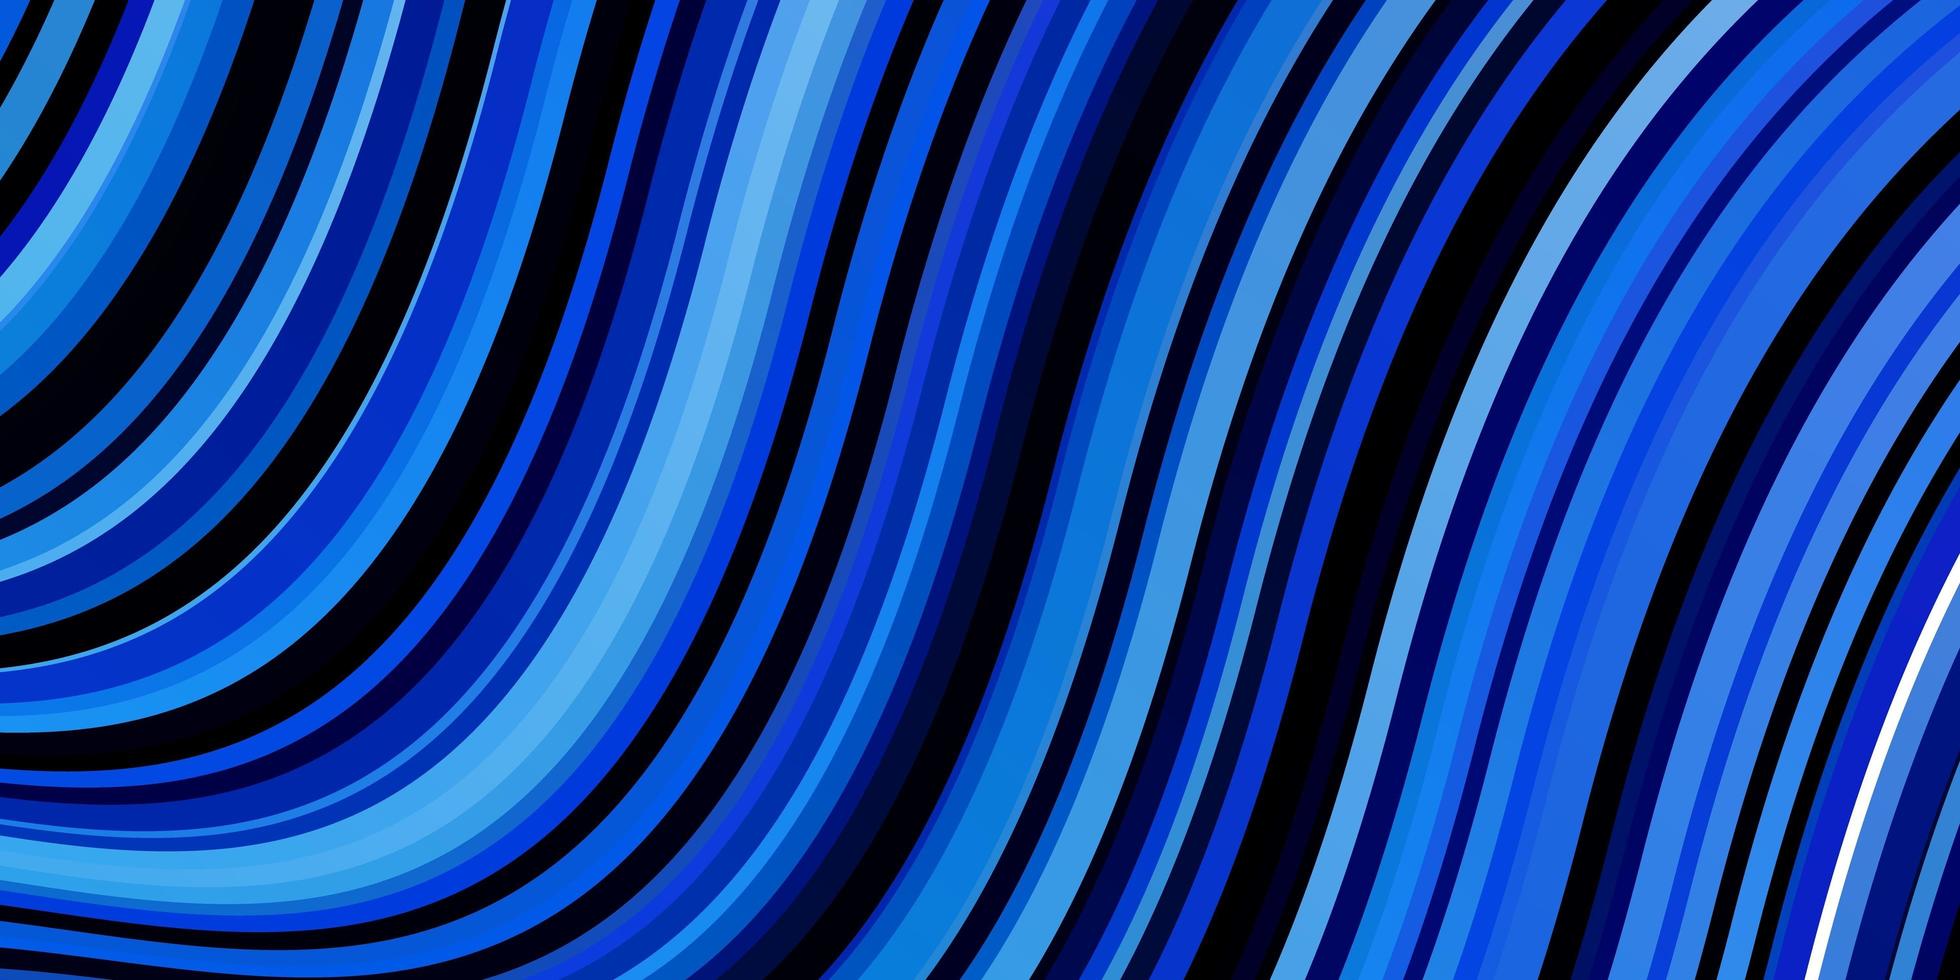 toile de fond de vecteur bleu foncé avec arc circulaire.